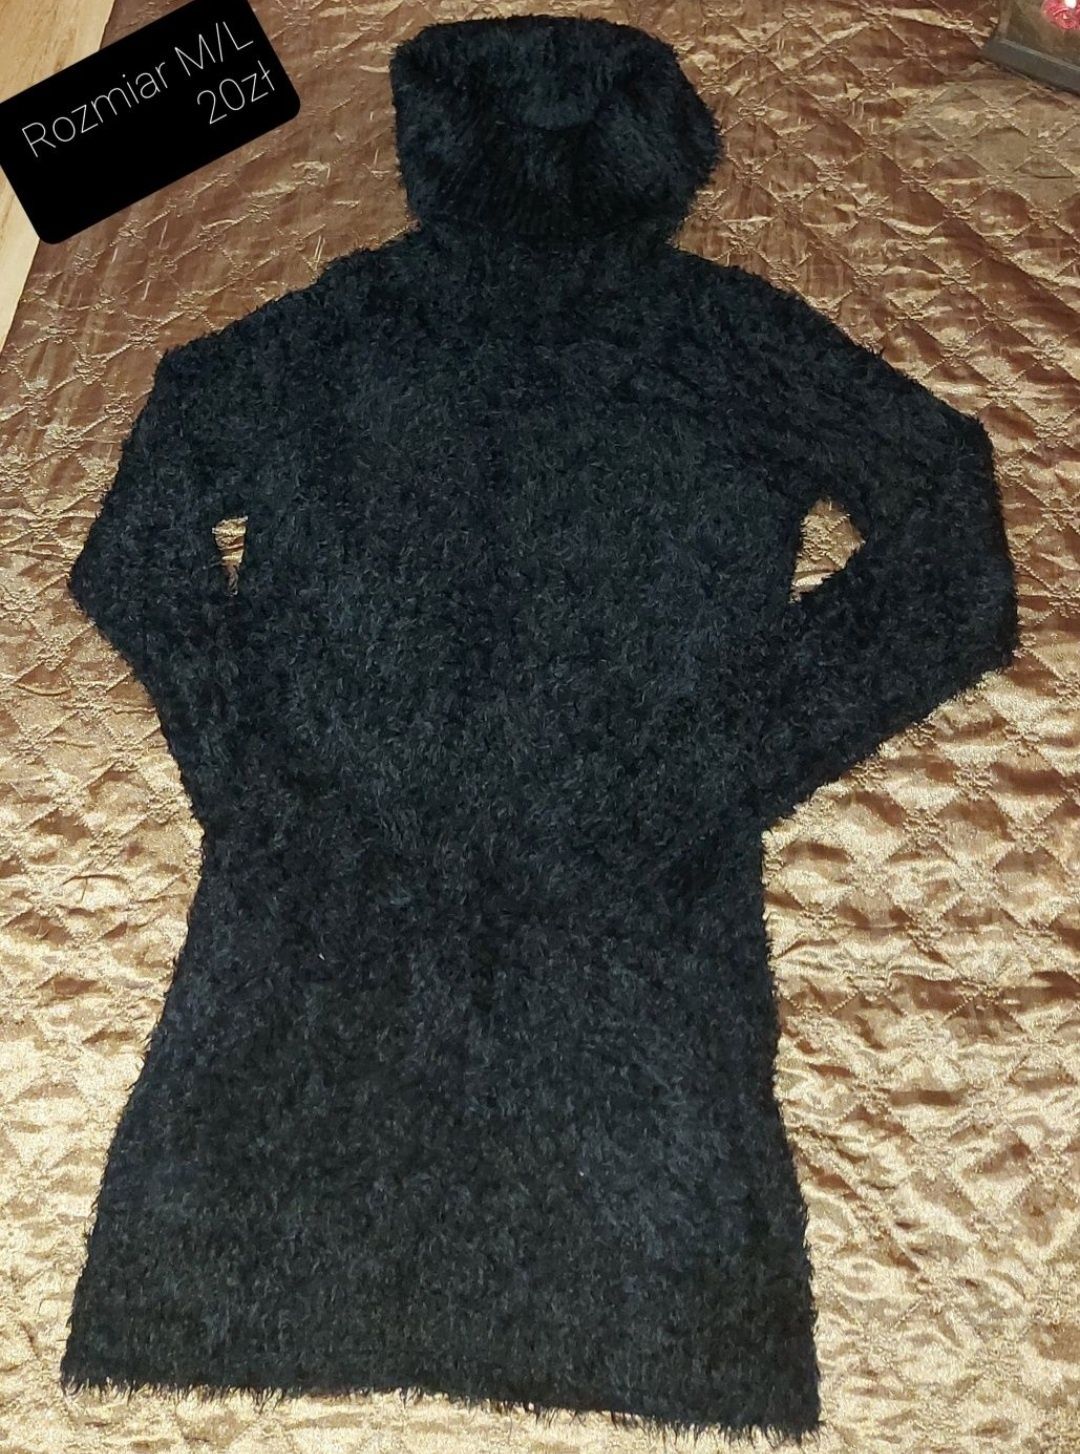 Sweterki damskie - rozmiar M (38)